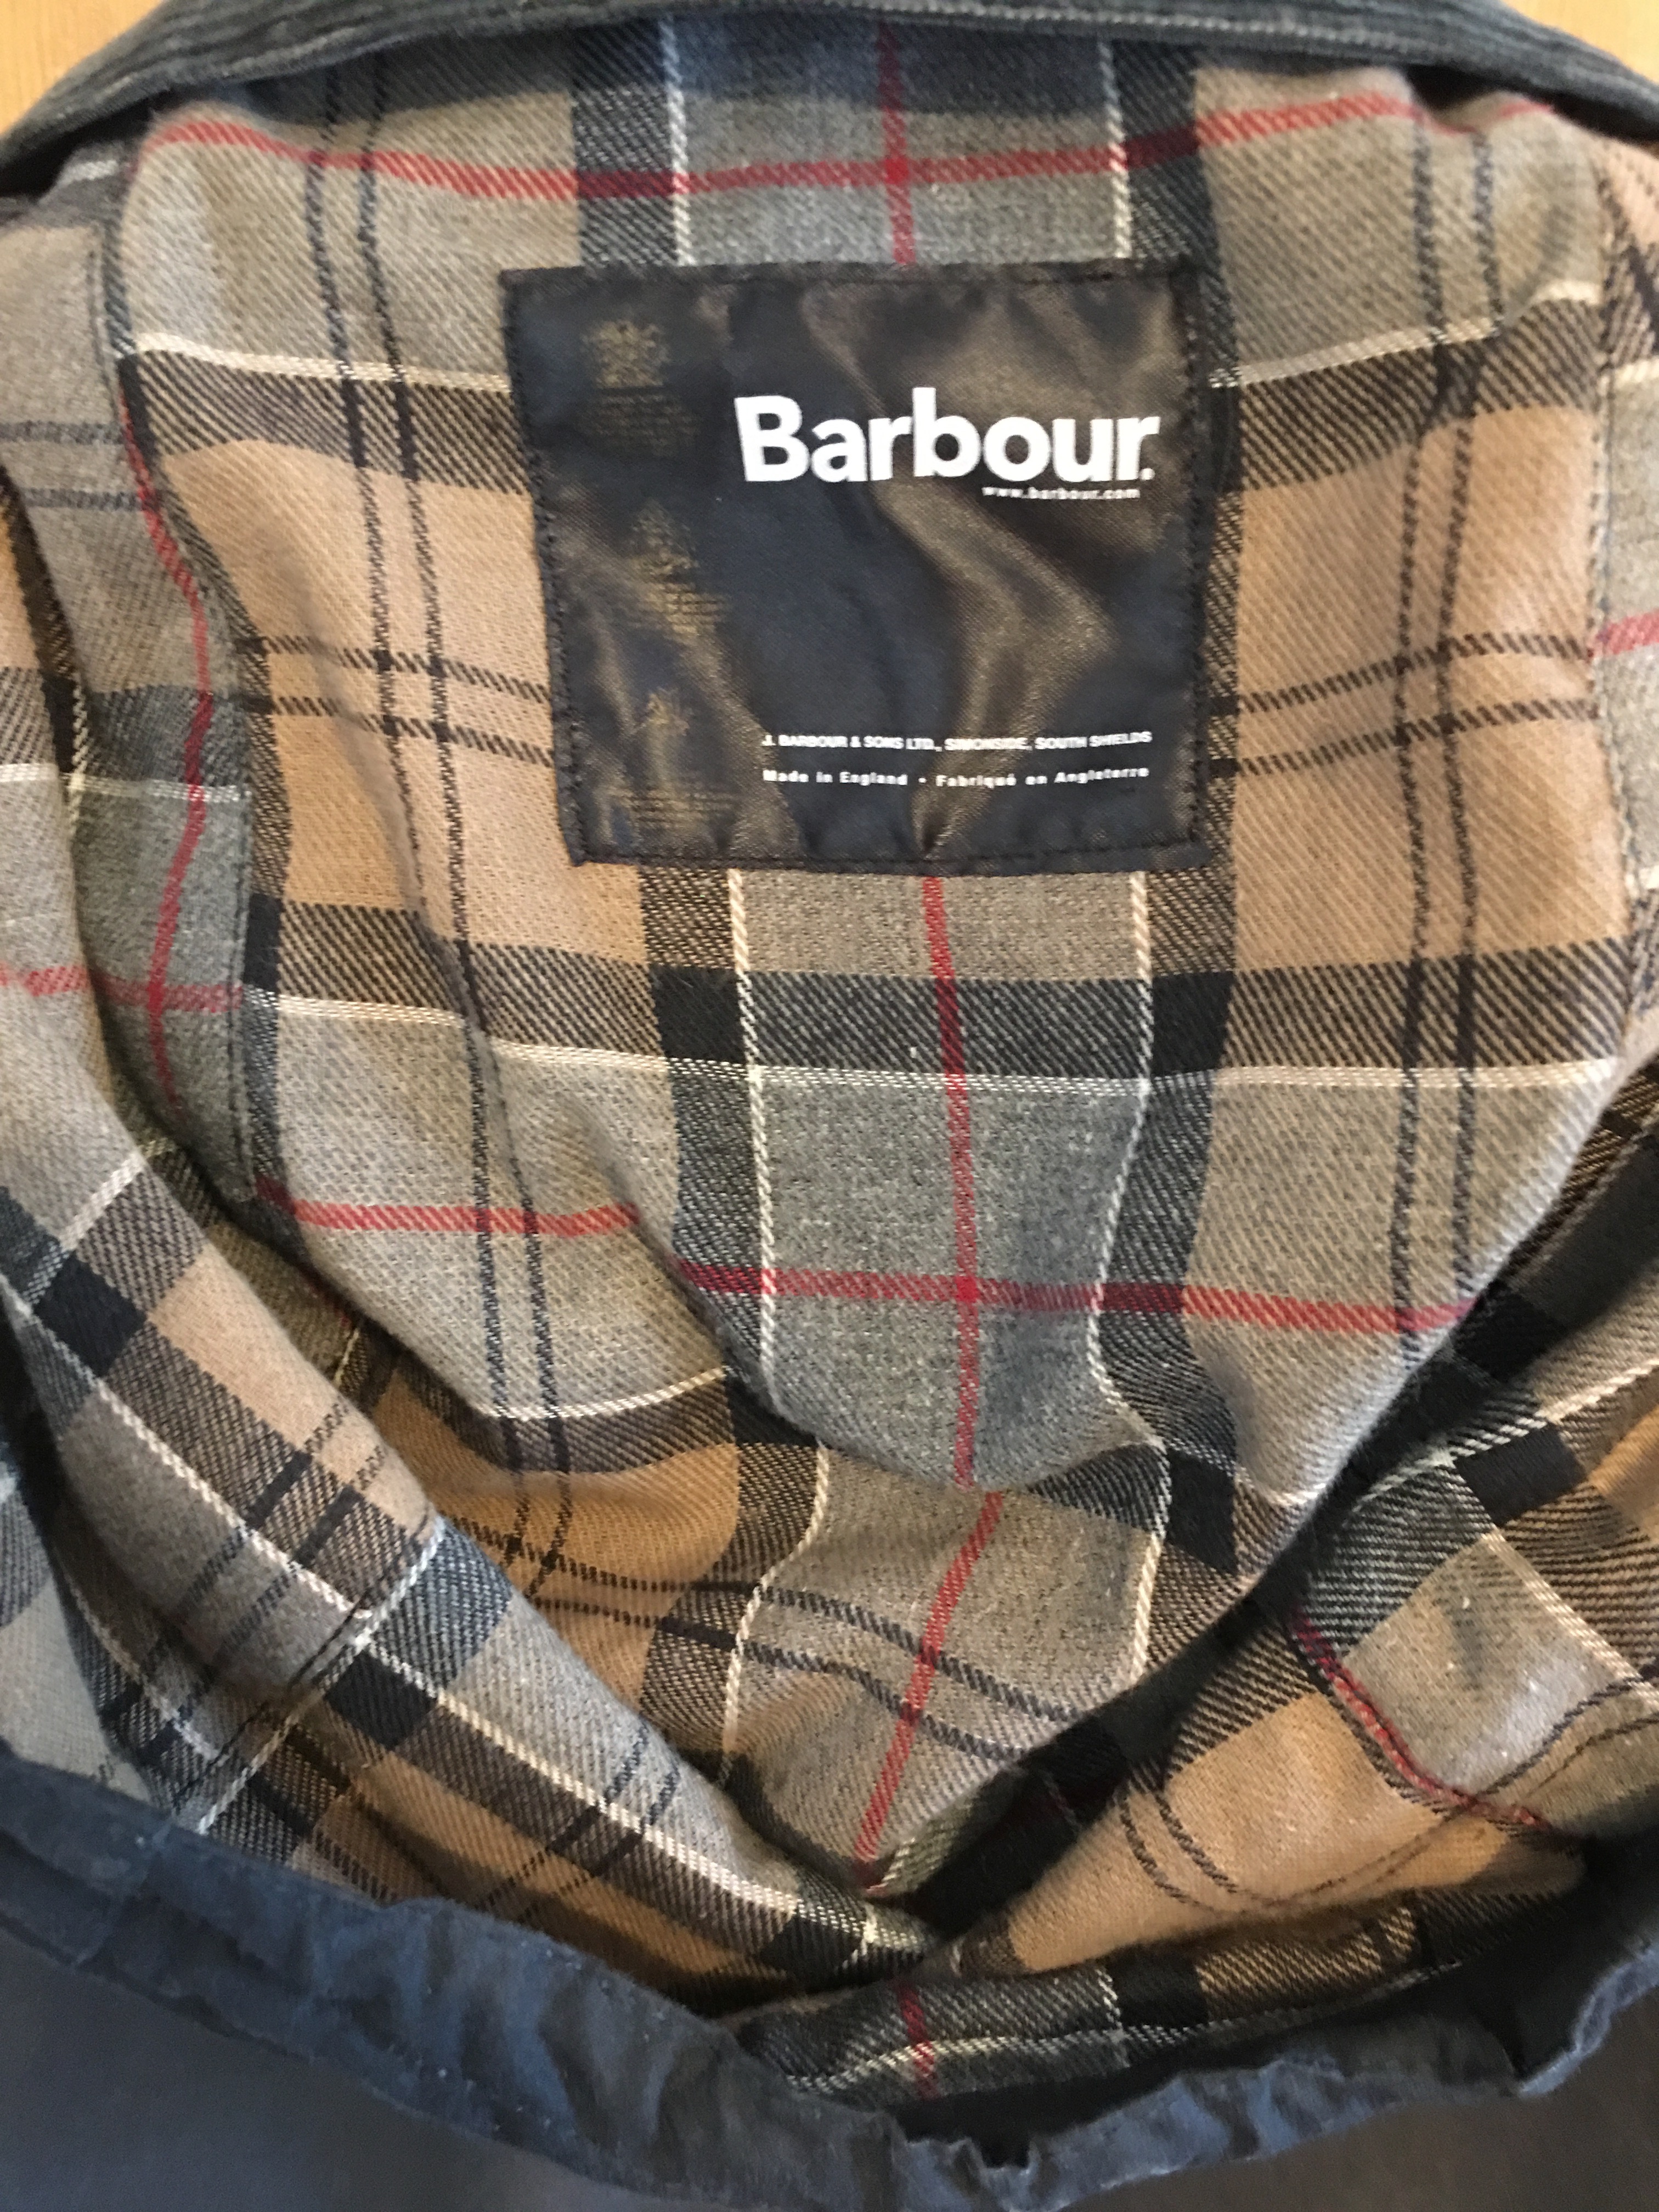 Barbour waxed jackets | ukmade - UK 